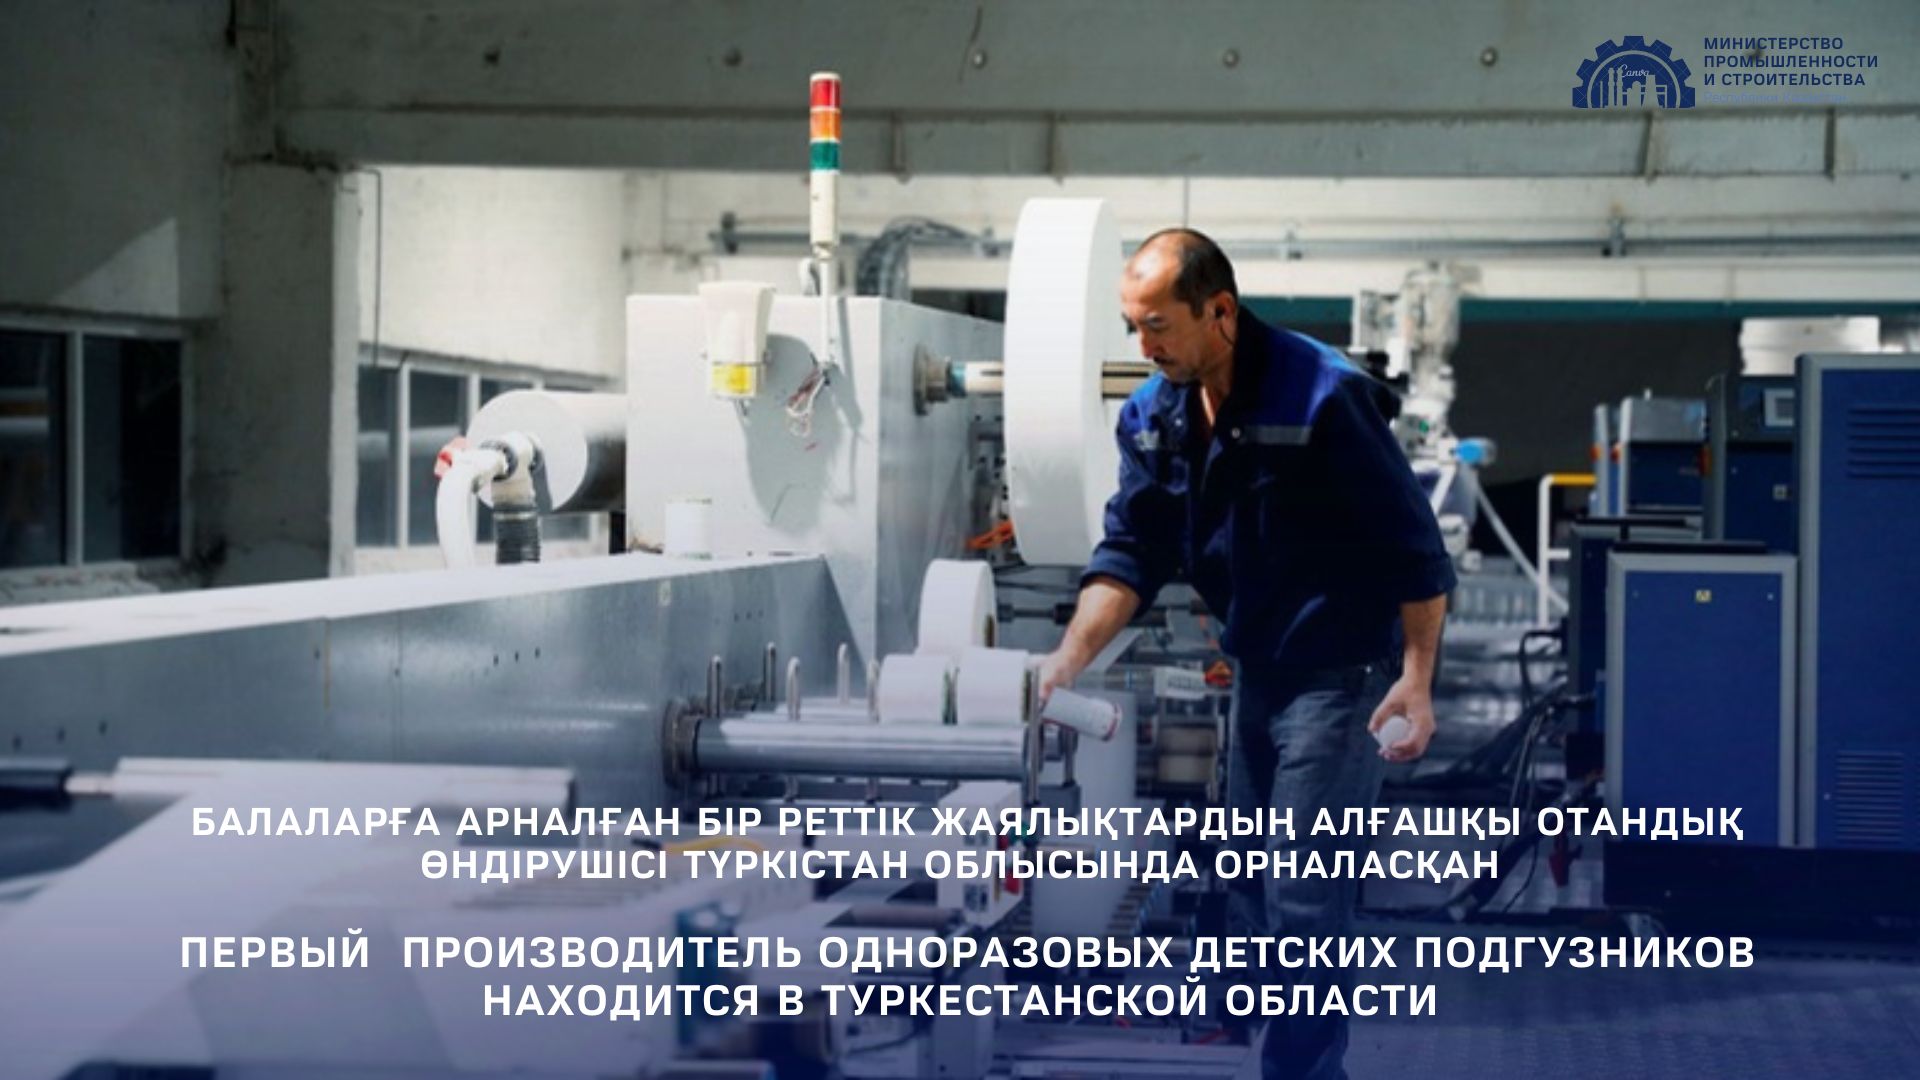 Первый производитель одноразовых детских подгузников находится Туркестанской области